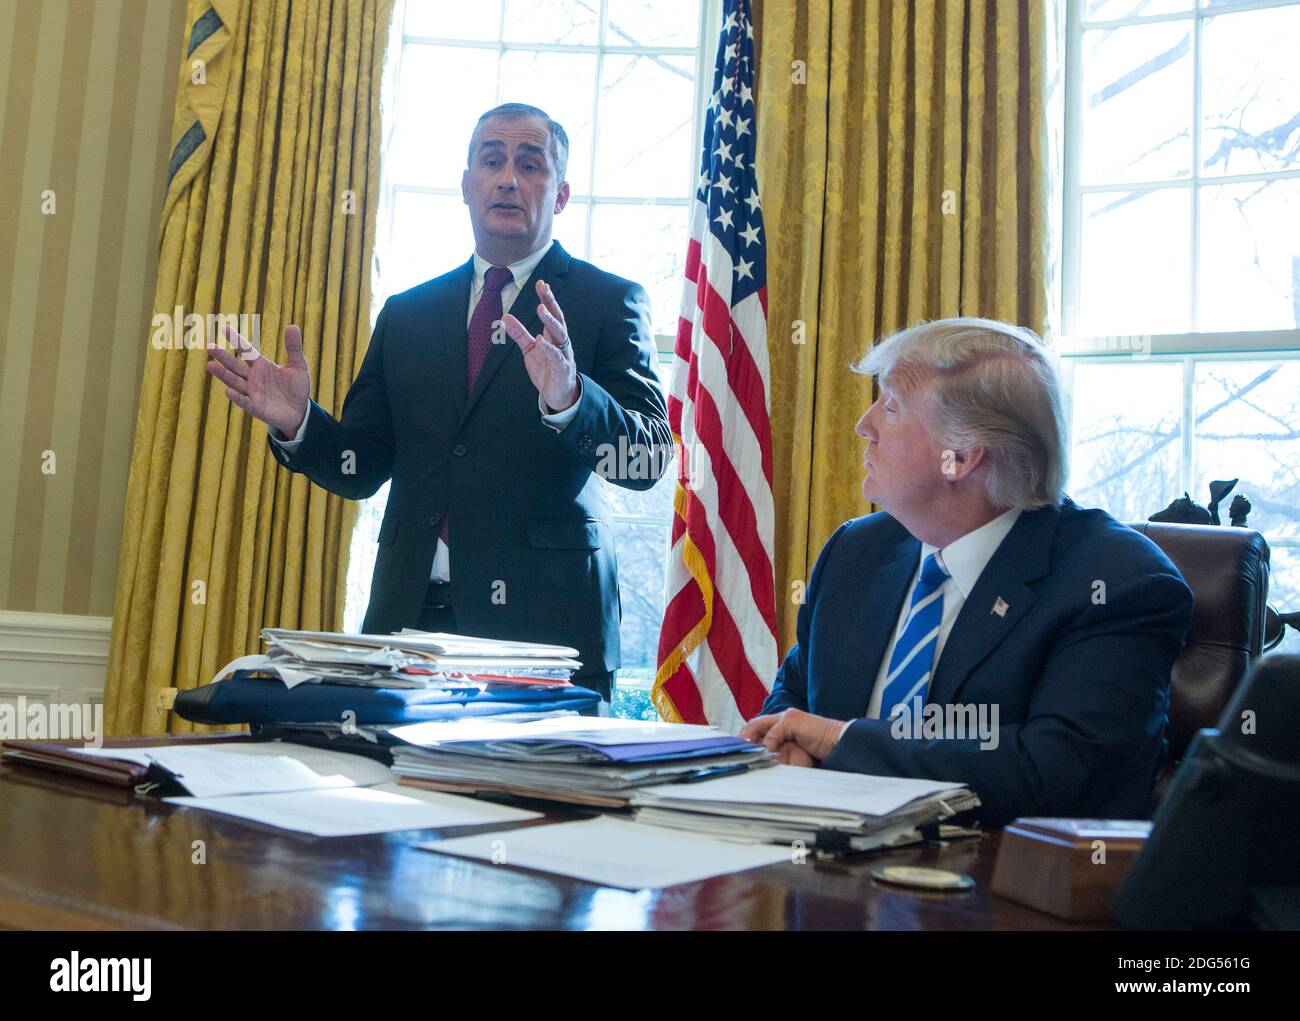 Intel-CEO Brian Krzanich spricht während eines Treffens mit US-Präsident Donald Trump im Weißen Haus in Washington, DC, am 8. Februar 2017, wo Intel eine Investition von 7 Milliarden US-Dollar für den Bau einer Fabrik in Chandler, Arizona, bekannt gab. Foto von Chris Kleponis/Pool/ABACAPRESS.COM Stockfoto